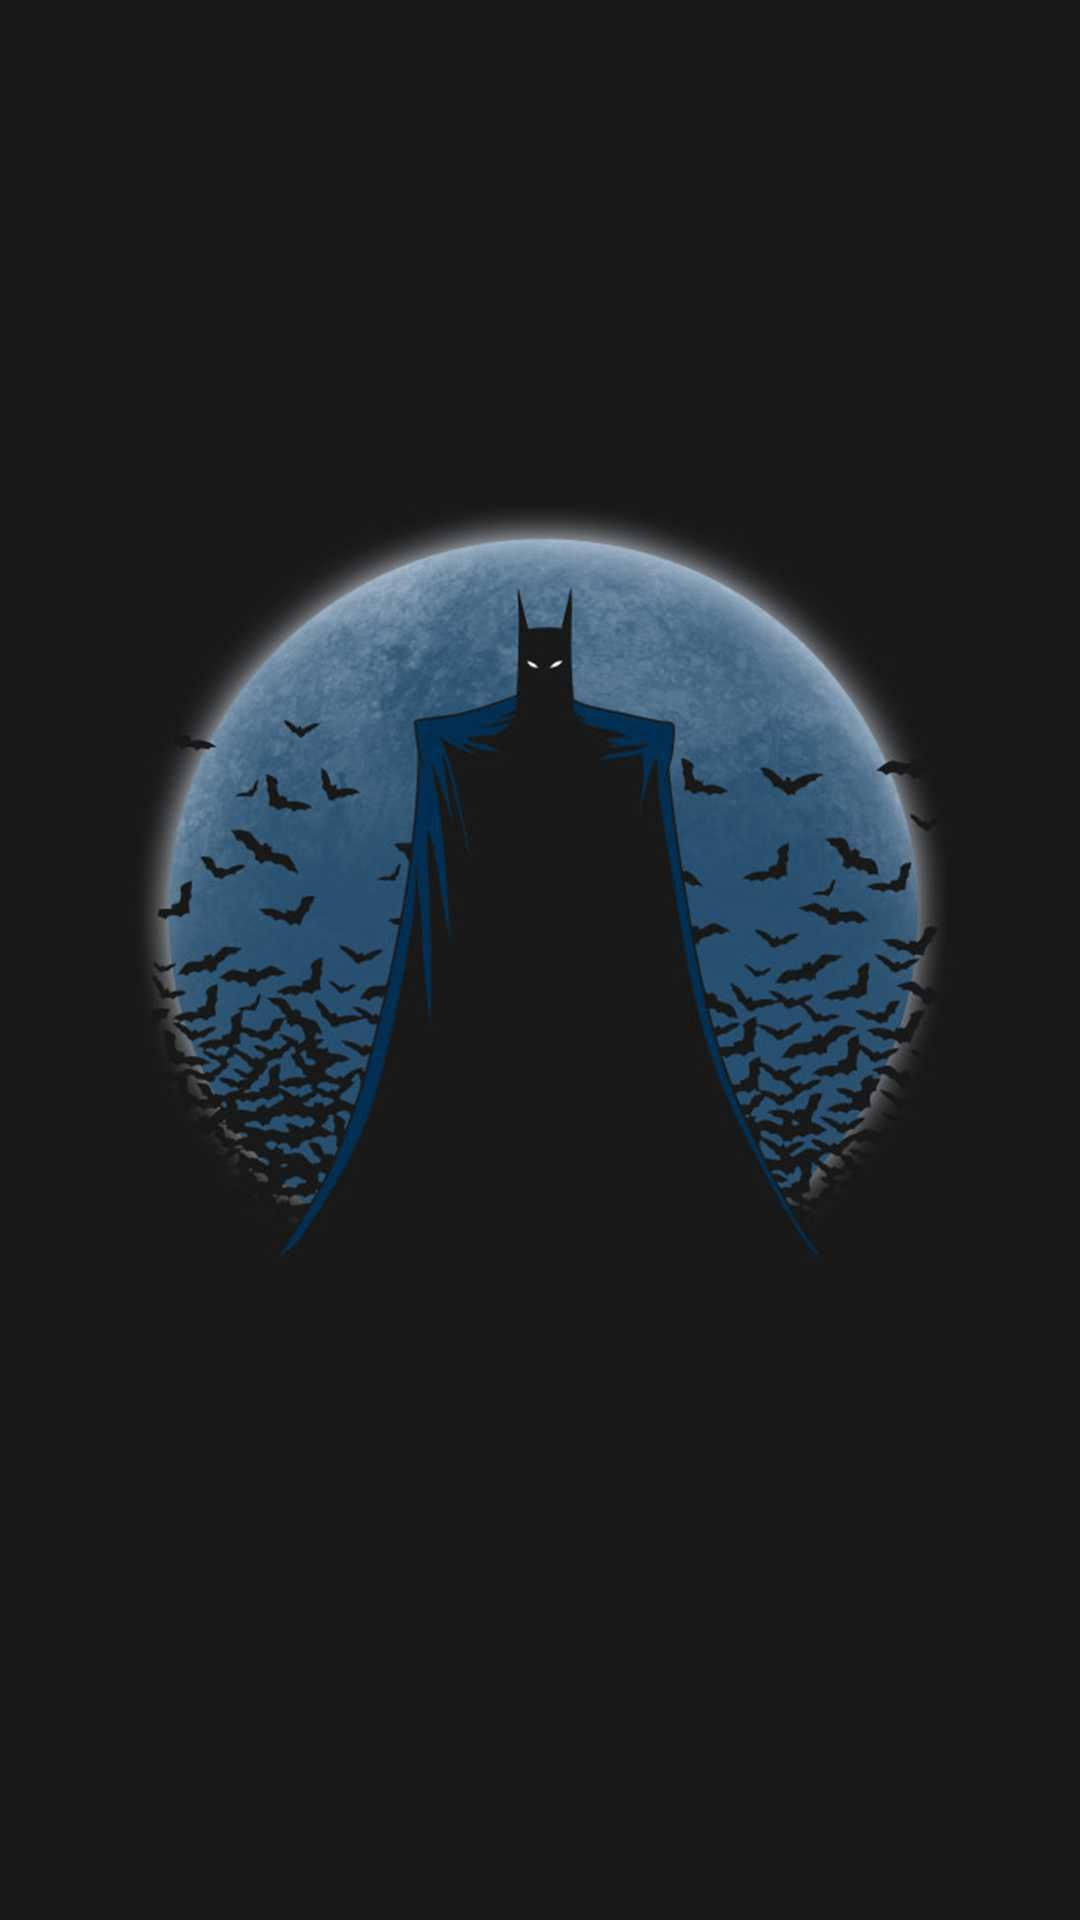 голубая луна за темным iphone бэтмена